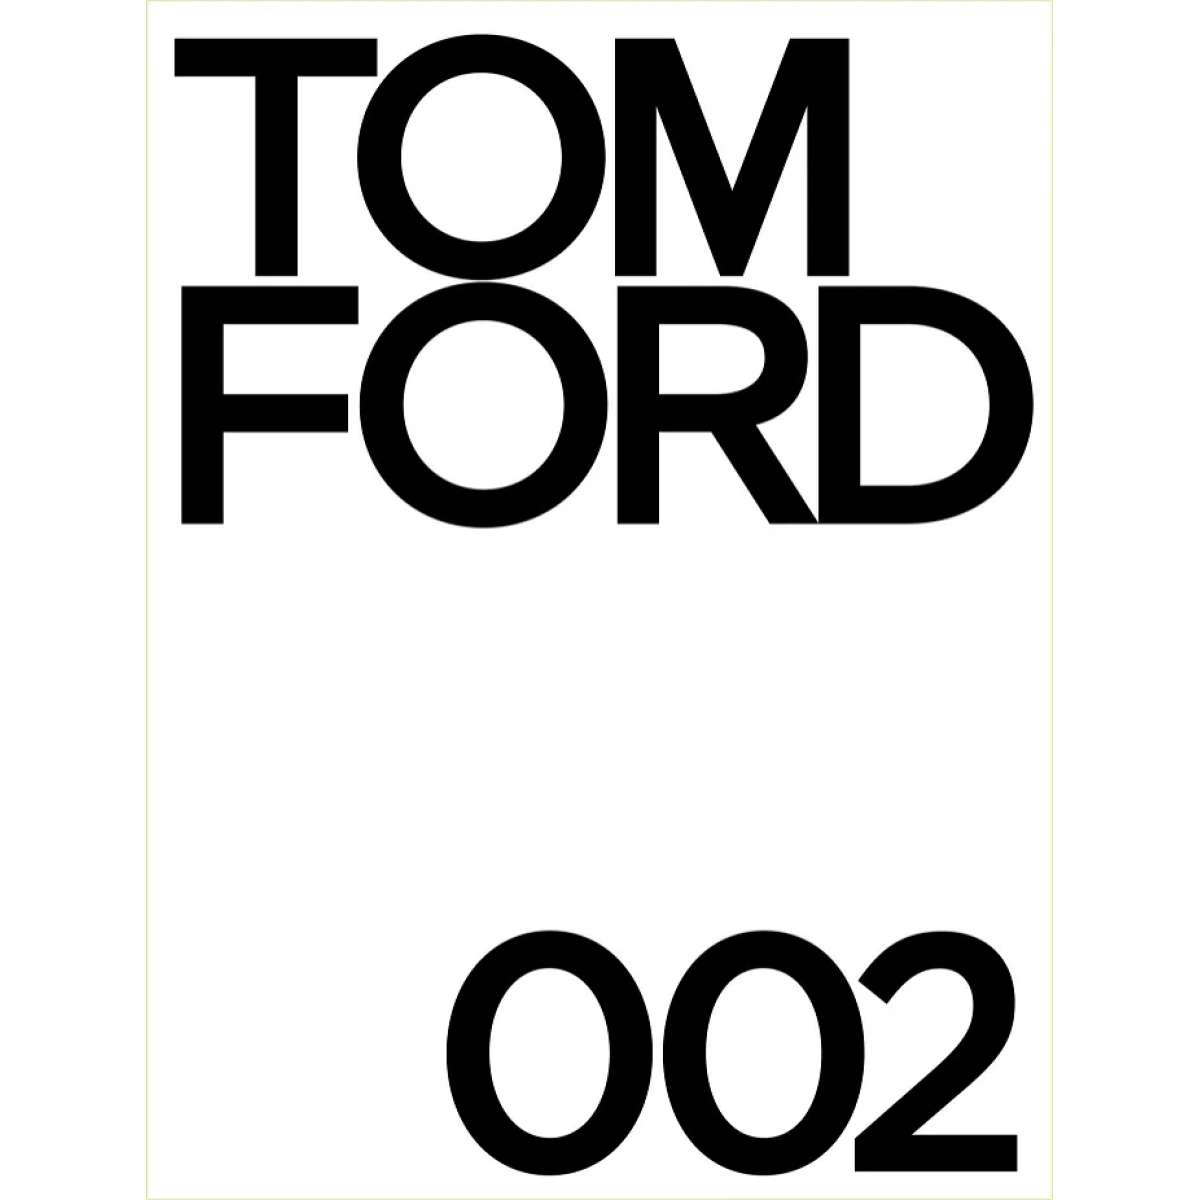 Immagine del prodotto TOM FORD 002, Bridget Foley - Libro Decorativo Bianco | New Mags